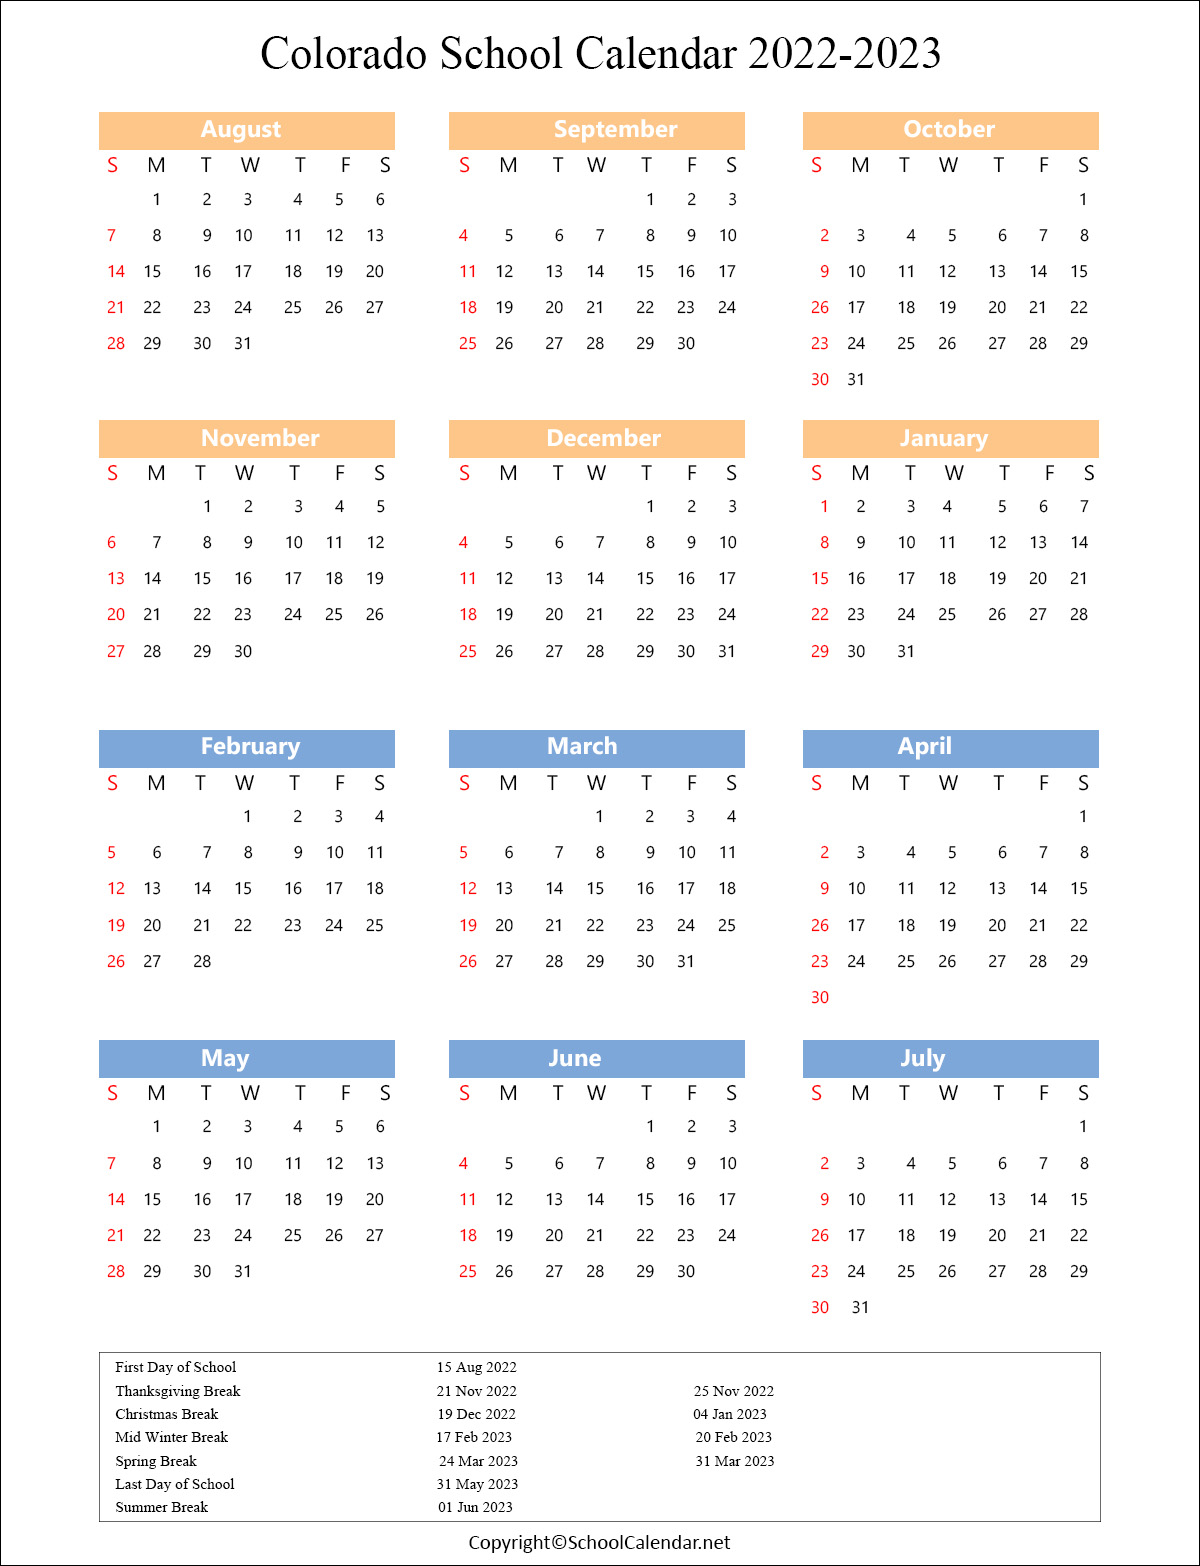 Colorado School Holiday Schedule 2022